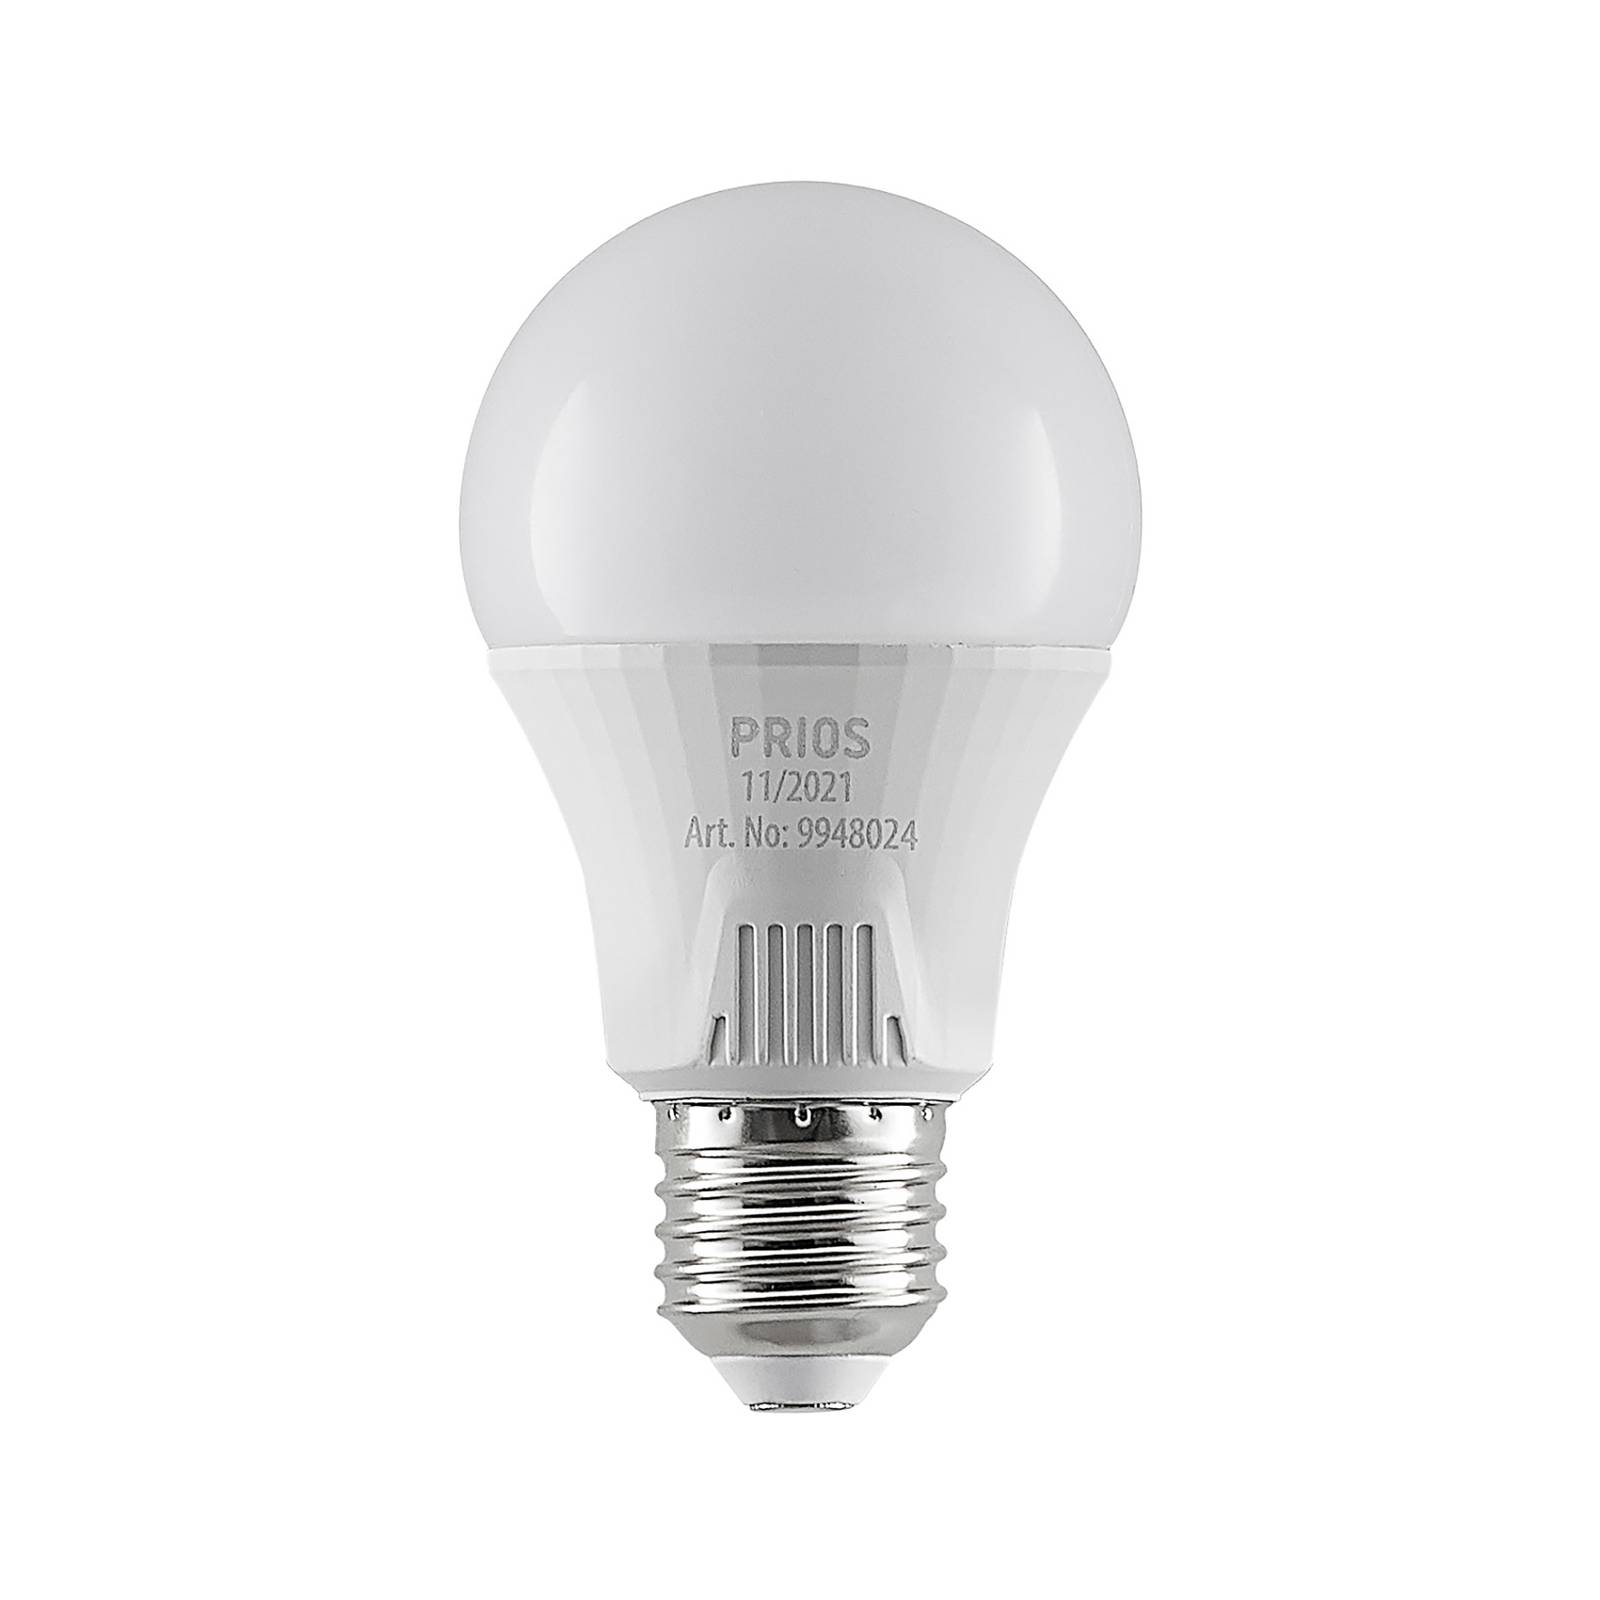 PRIOS LED-Lampe E27 A60 11W weiß 3.000K